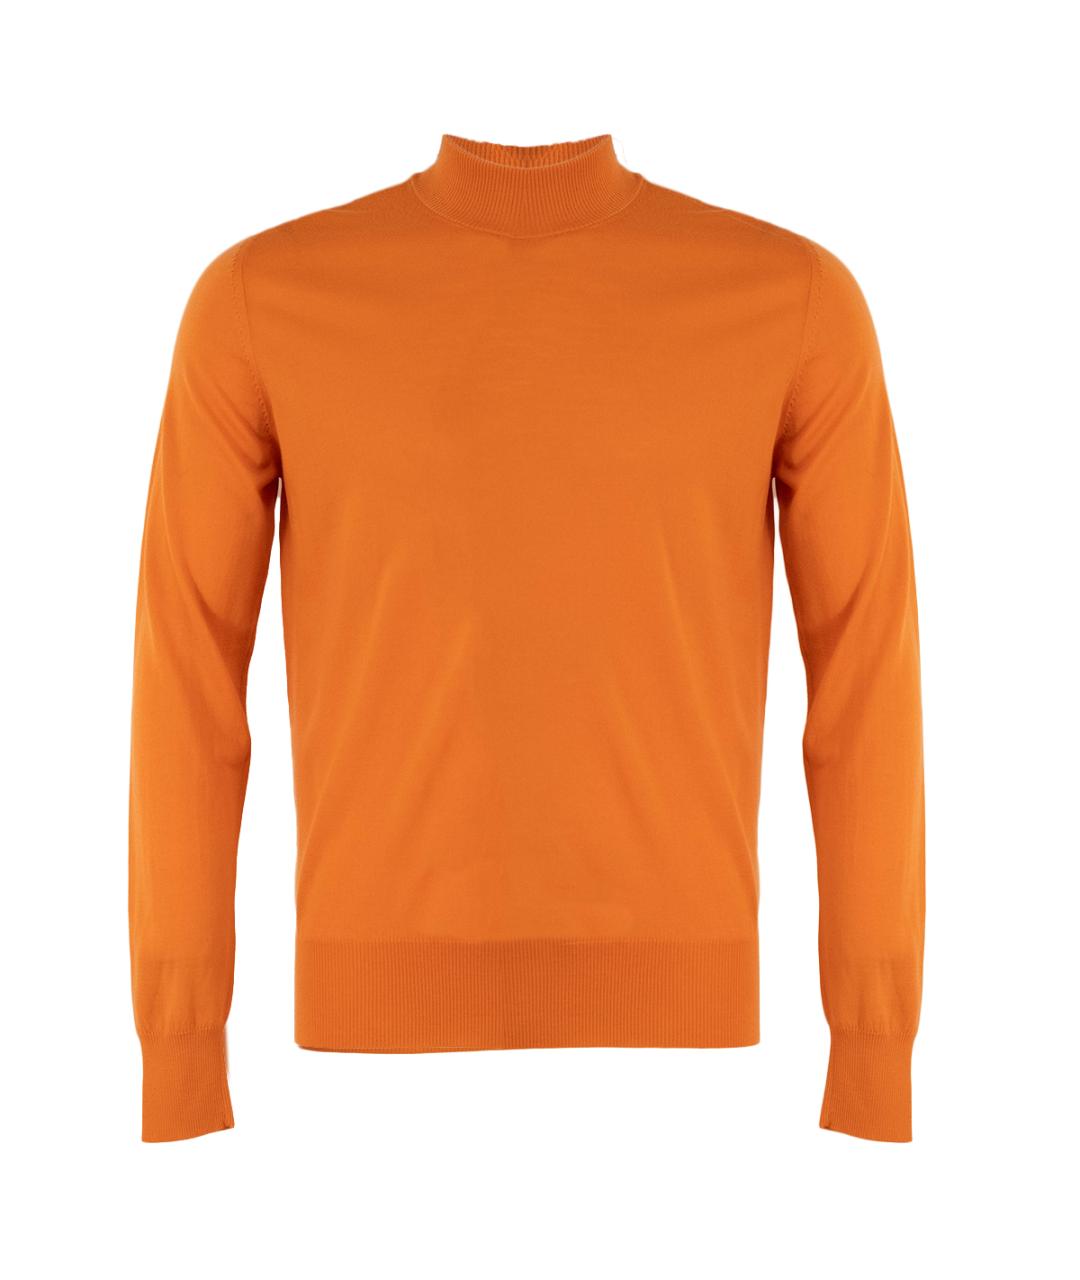 CORTIGIANI Оранжевый шерстяной джемпер / свитер, фото 1